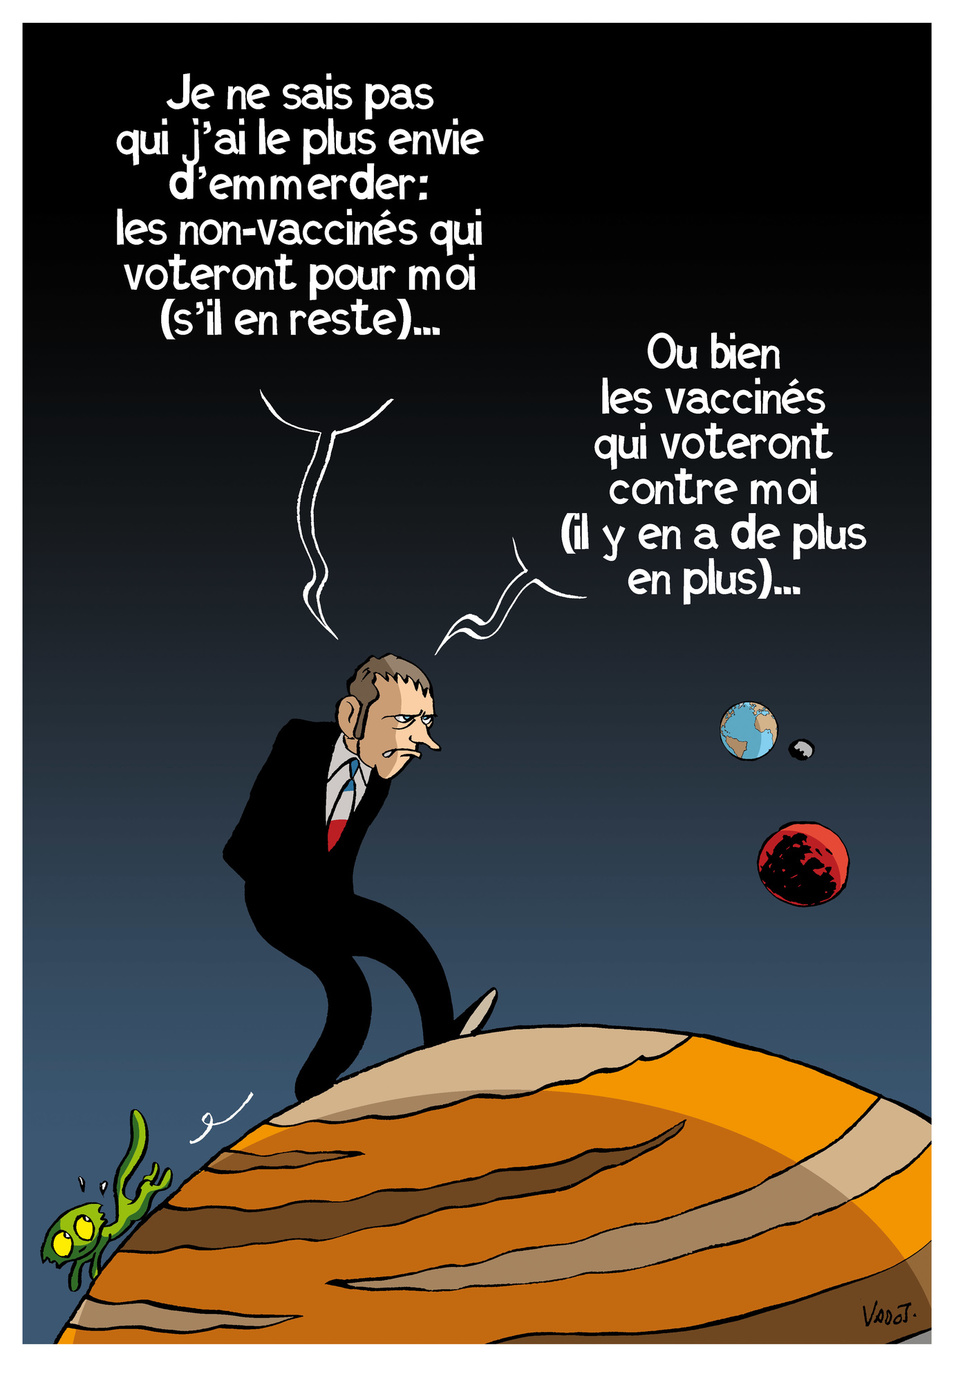 Emmanuel Macron clive encore un peu plus en déclarant vouloir "emmerder les non-vaccinés jusqu'au bout"., Vadot